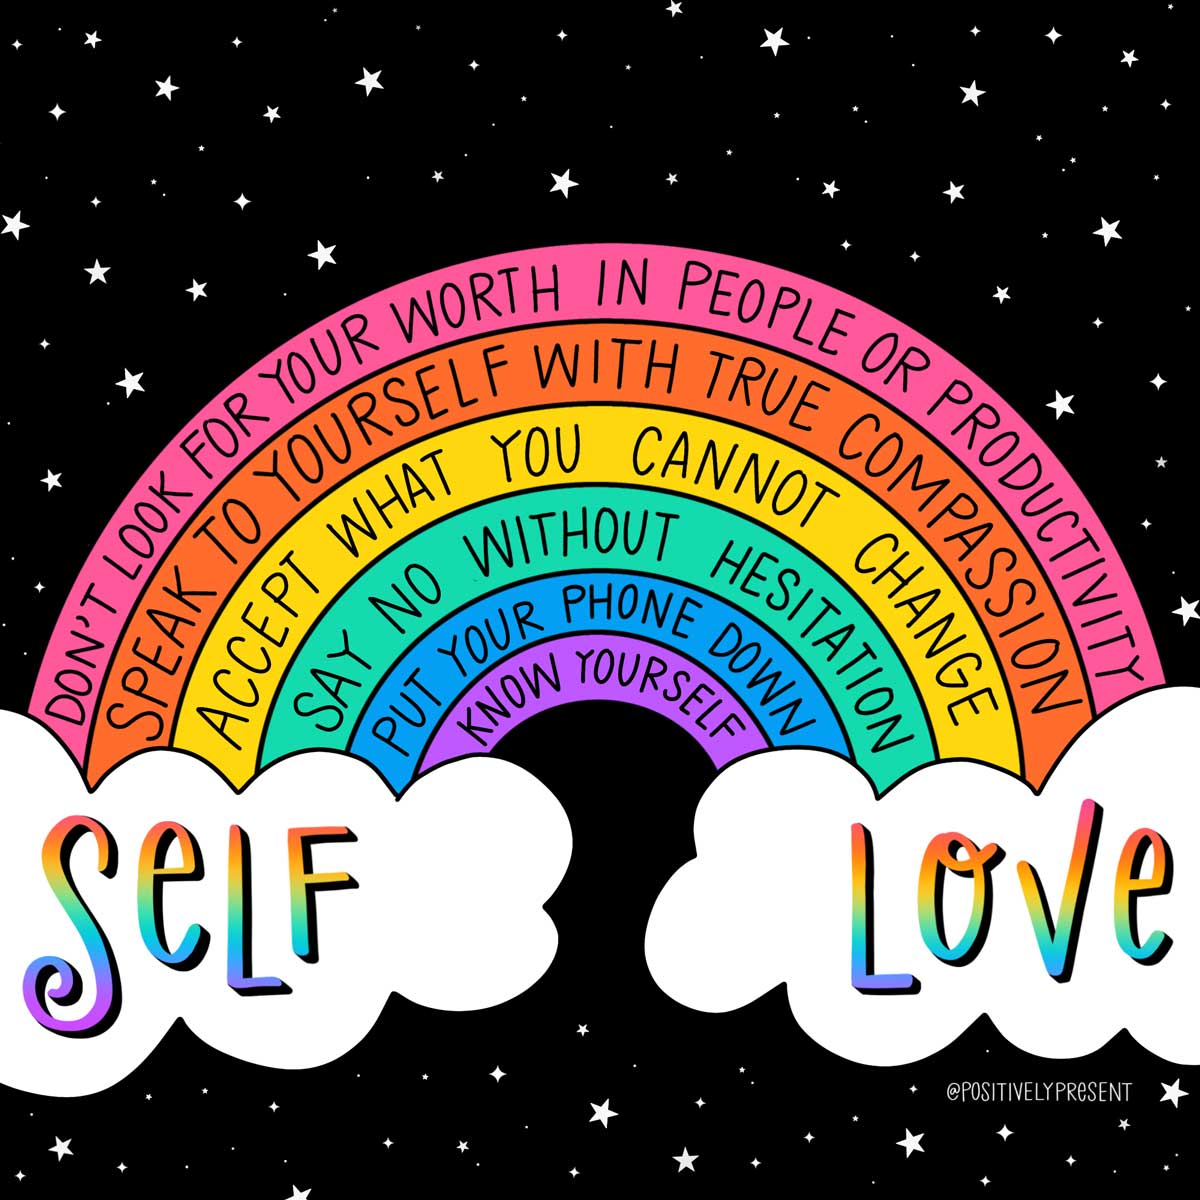 rainbow art has self love tips on it.